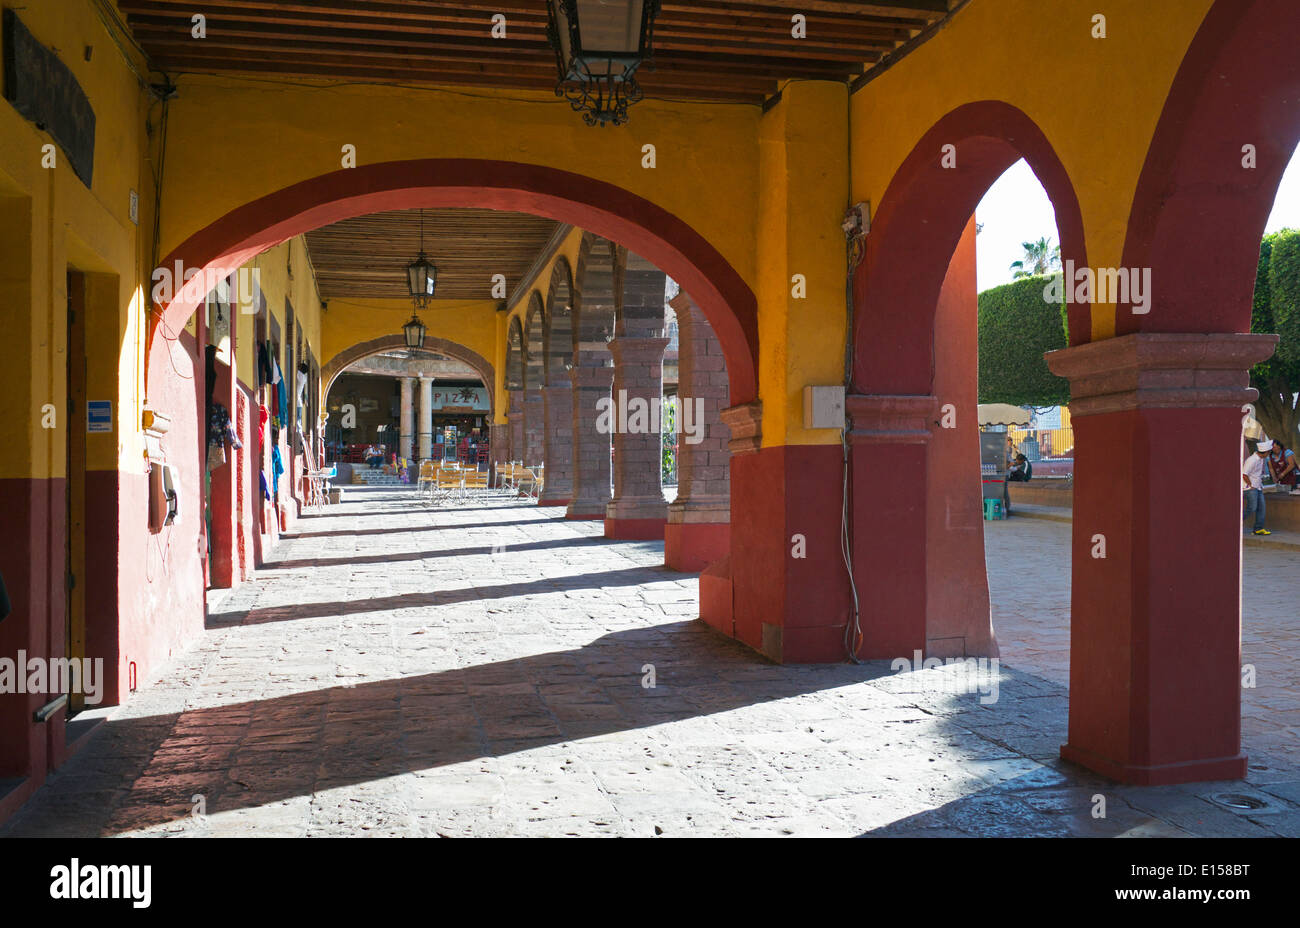 Covered walkway Plaza Principal San Miguel de Allende Mexico Stock Photo